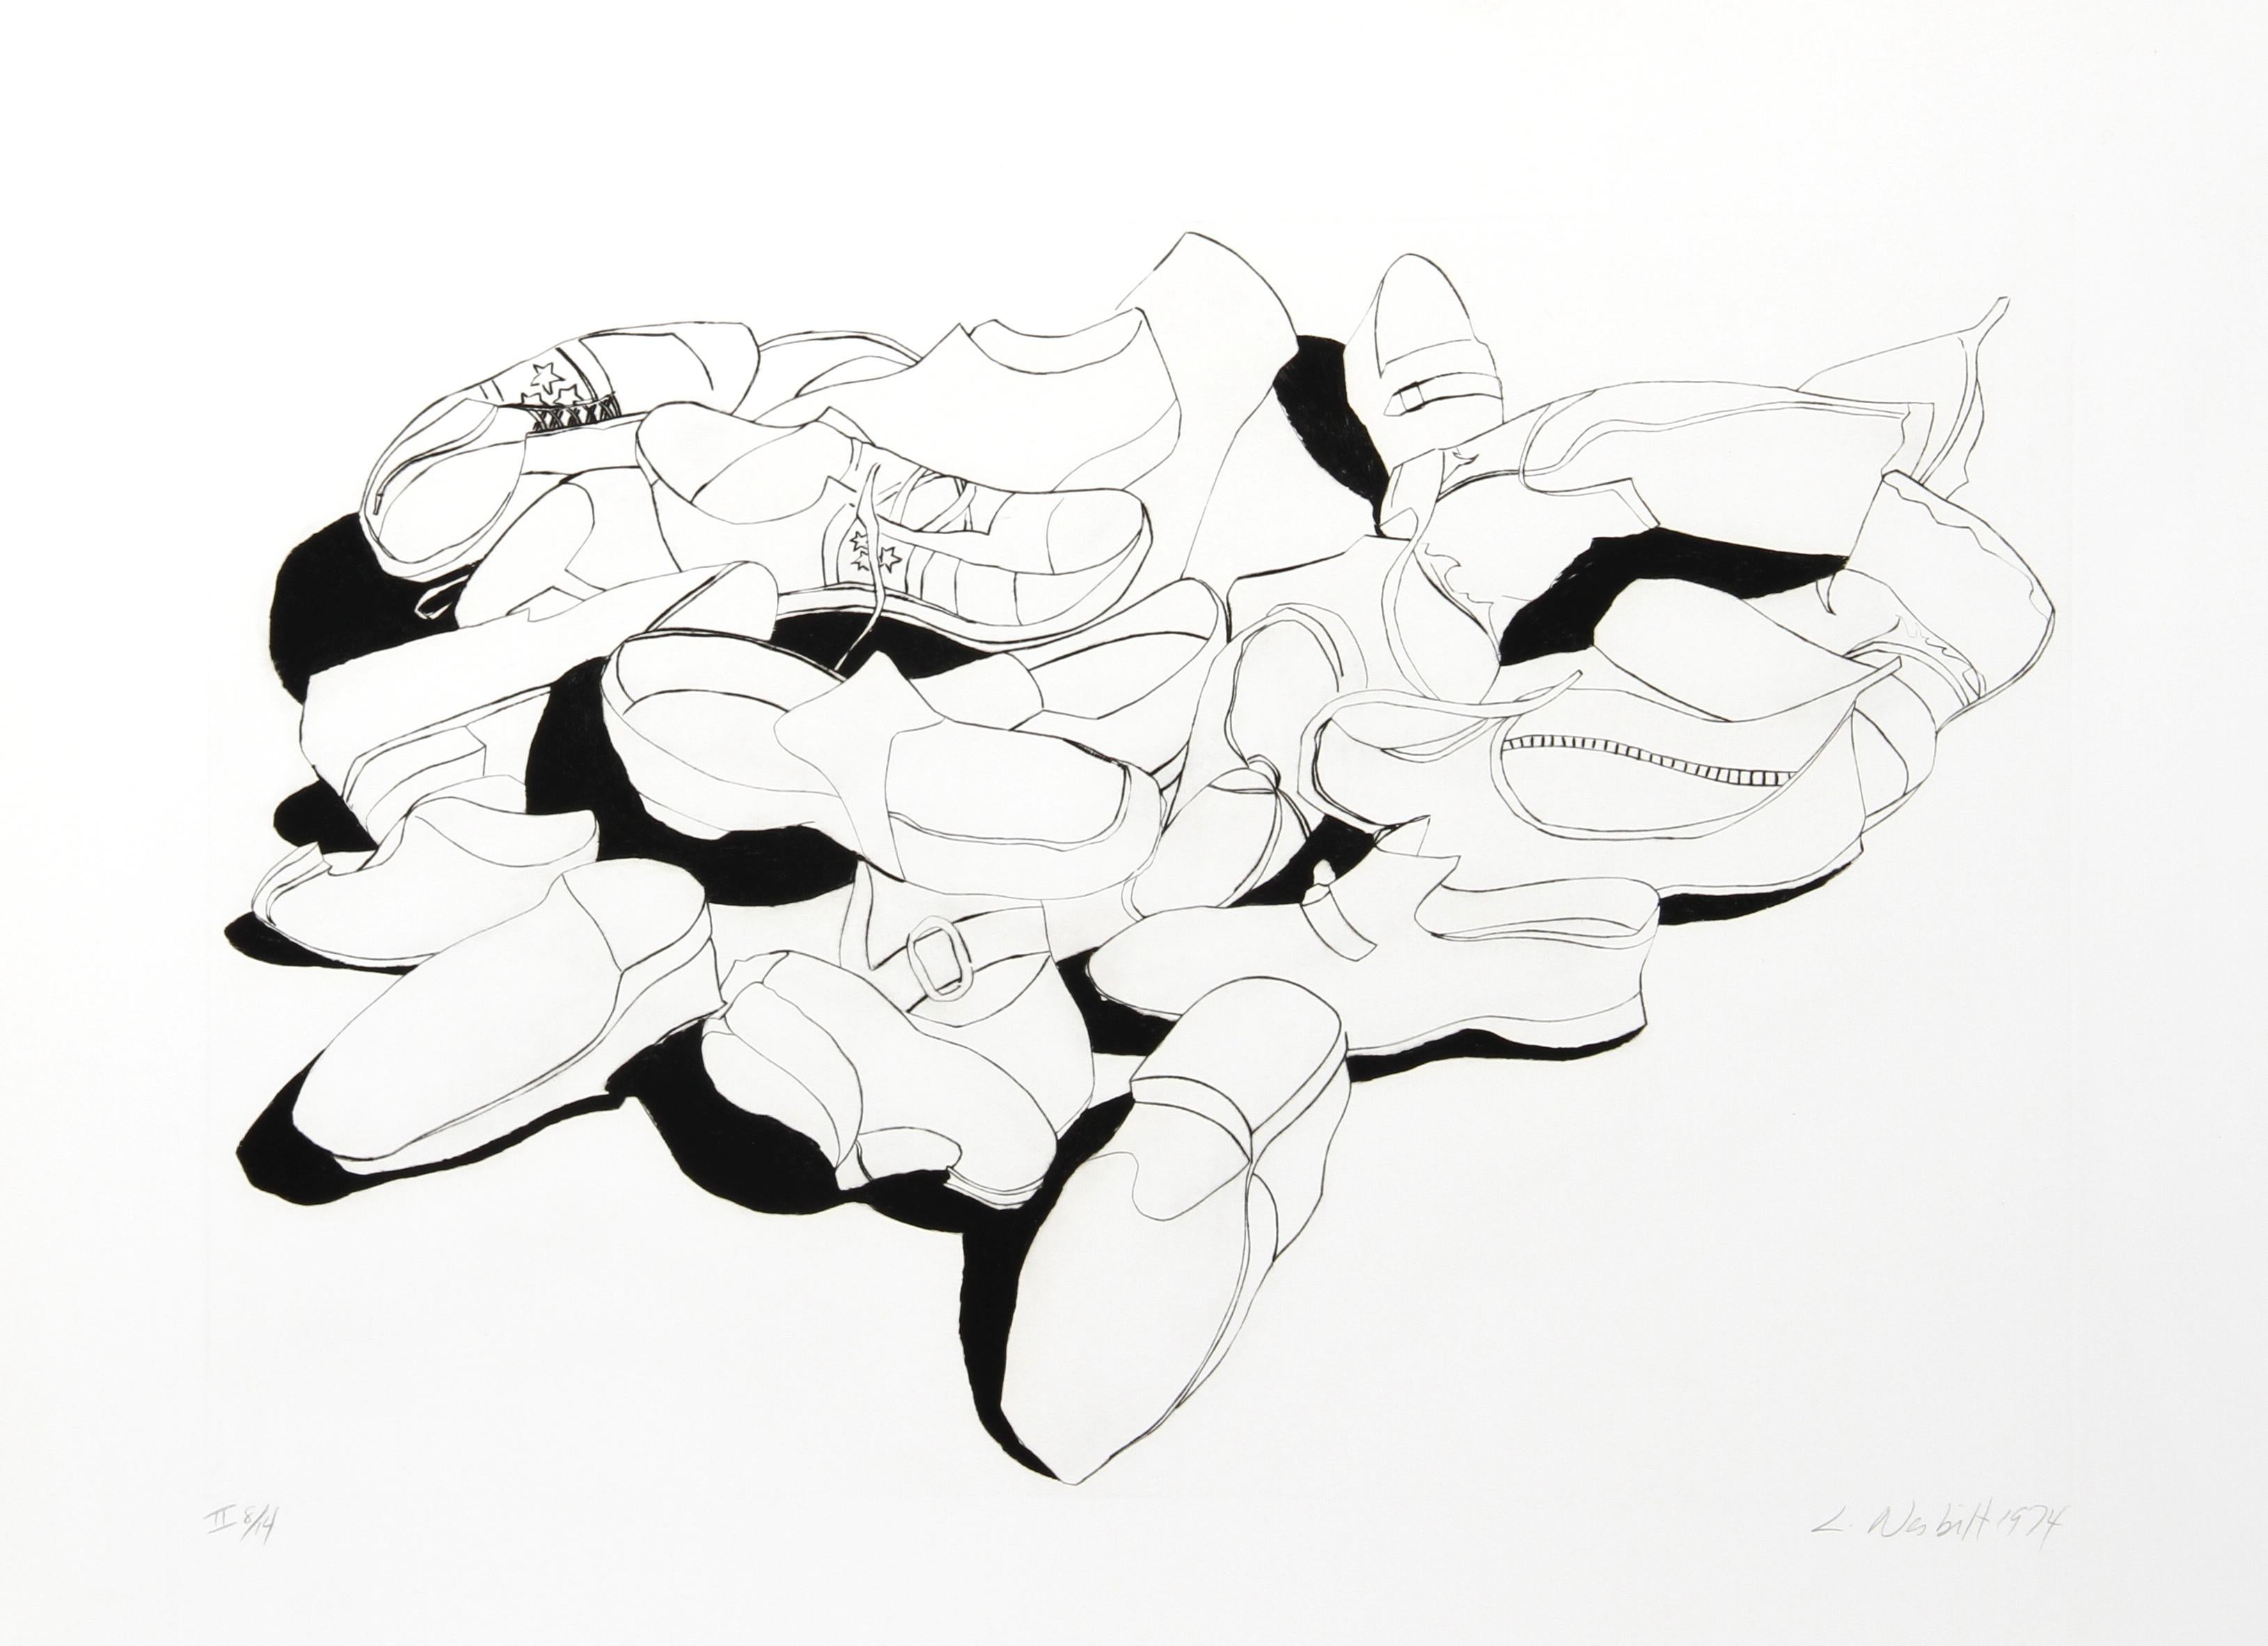 Künstler: Lowell Blair Nesbitt, Amerikaner (1933 - 1993)
Titel: Schuhe
Jahr: 1974
Medium: Radierung, mit Bleistift signiert und nummeriert
Auflage: II 14
Bildgröße: 19 x 28 Zoll
Größe: 27,5 x 36 Zoll (69,85 x 91,44 cm)